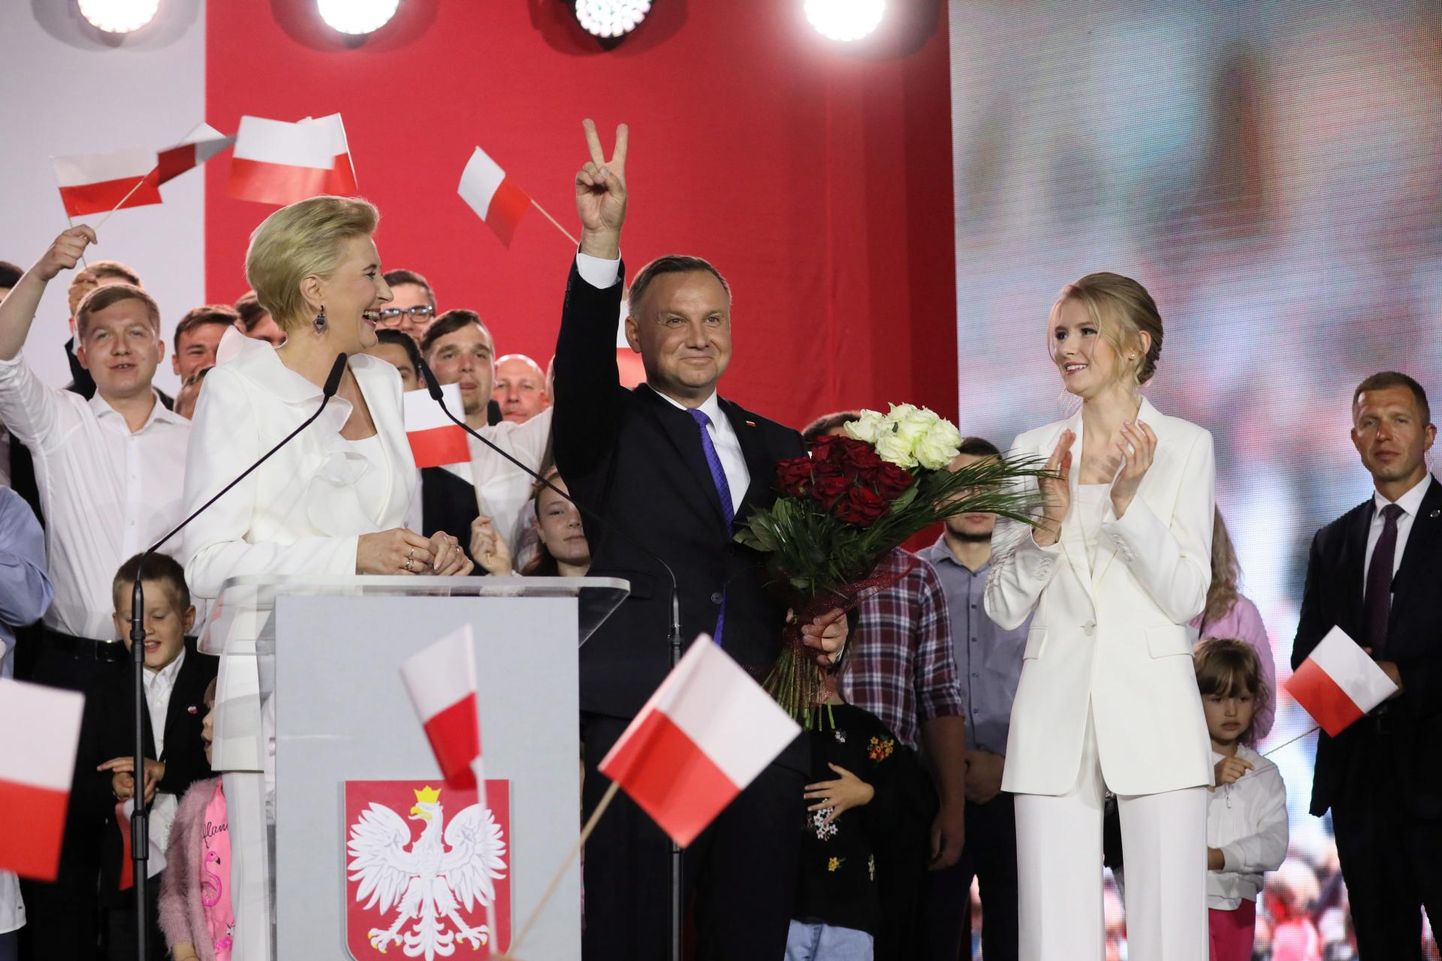 Andrzej Duda tähistamas võitu Poola presidendivalimistel koos oma abikaasa Agata (vasakul) ja tütre Kingaga (paremal). 